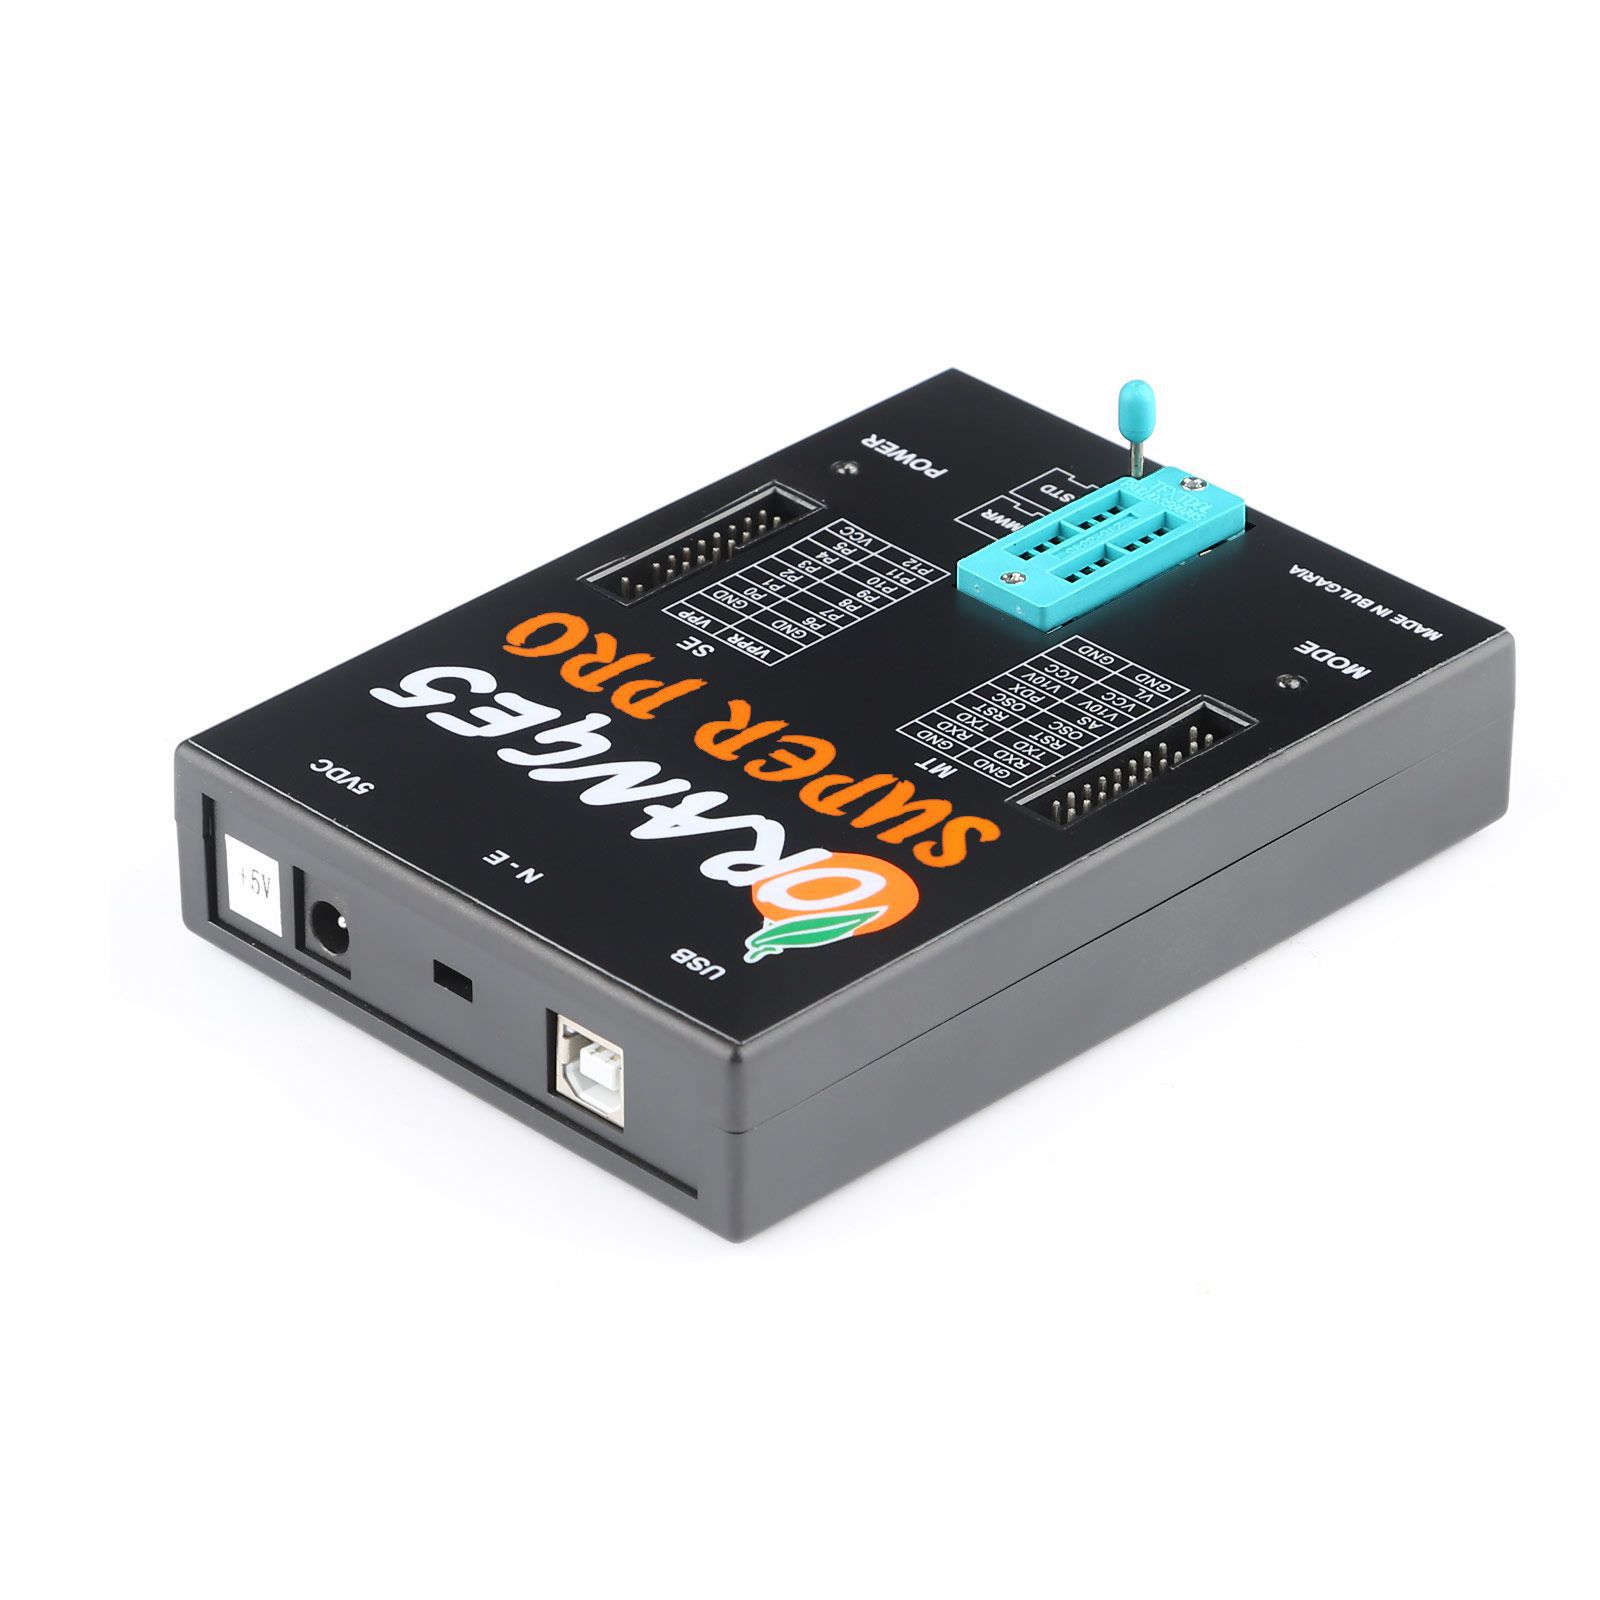 Outil de programmation orange5 super pro v1.35 avec dongle USB Adaptateur complet pour module de tableau de bord airbag entièrement activé